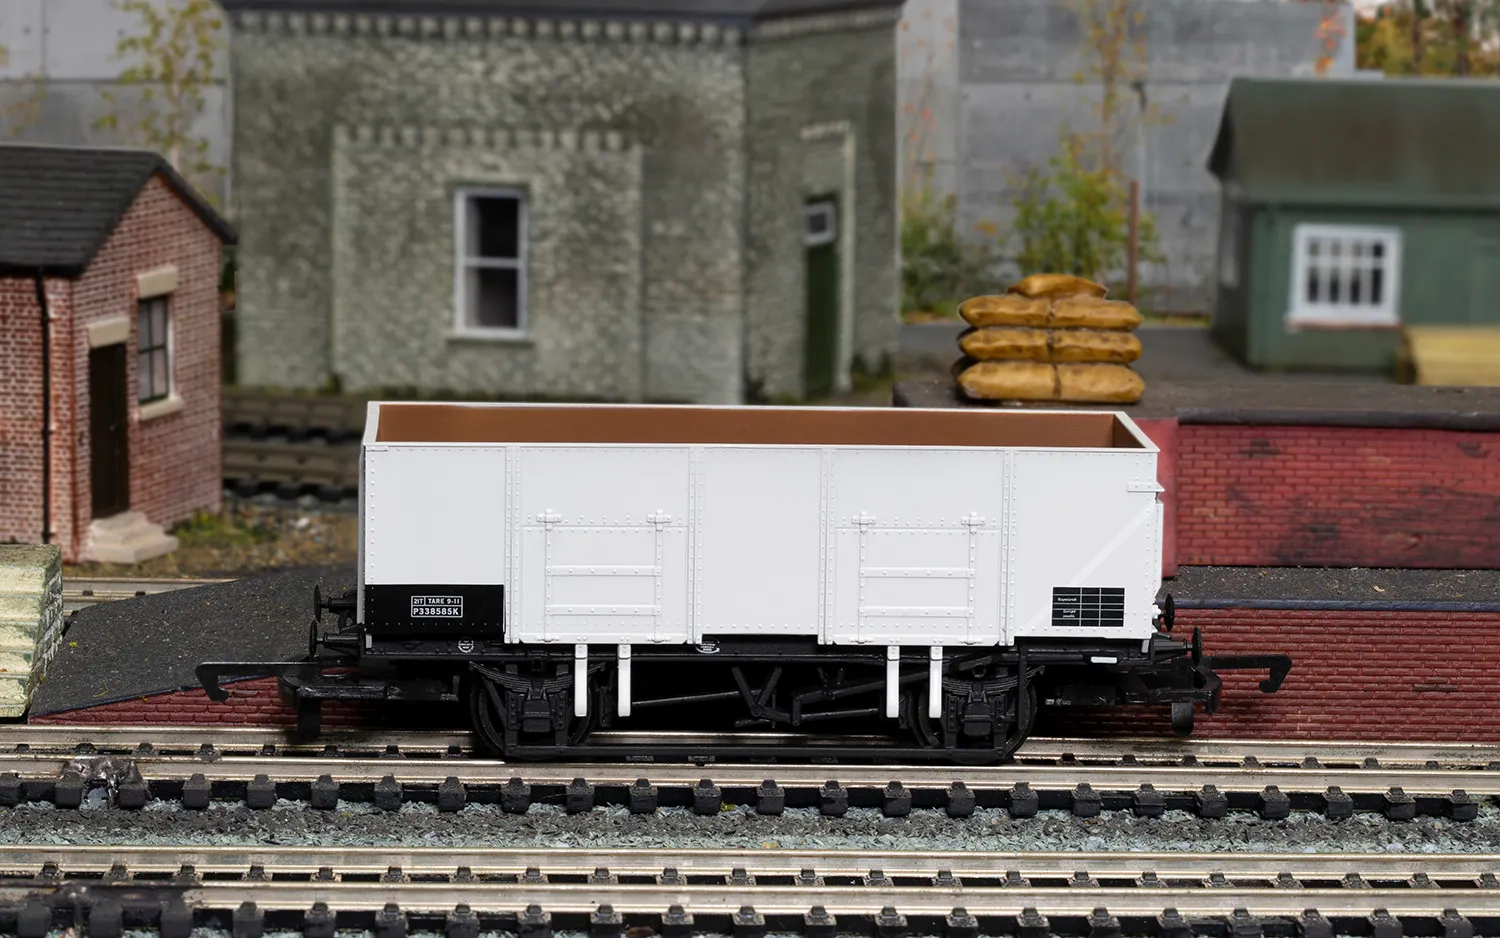 21T Coal Wagon, P200781 - Era 4